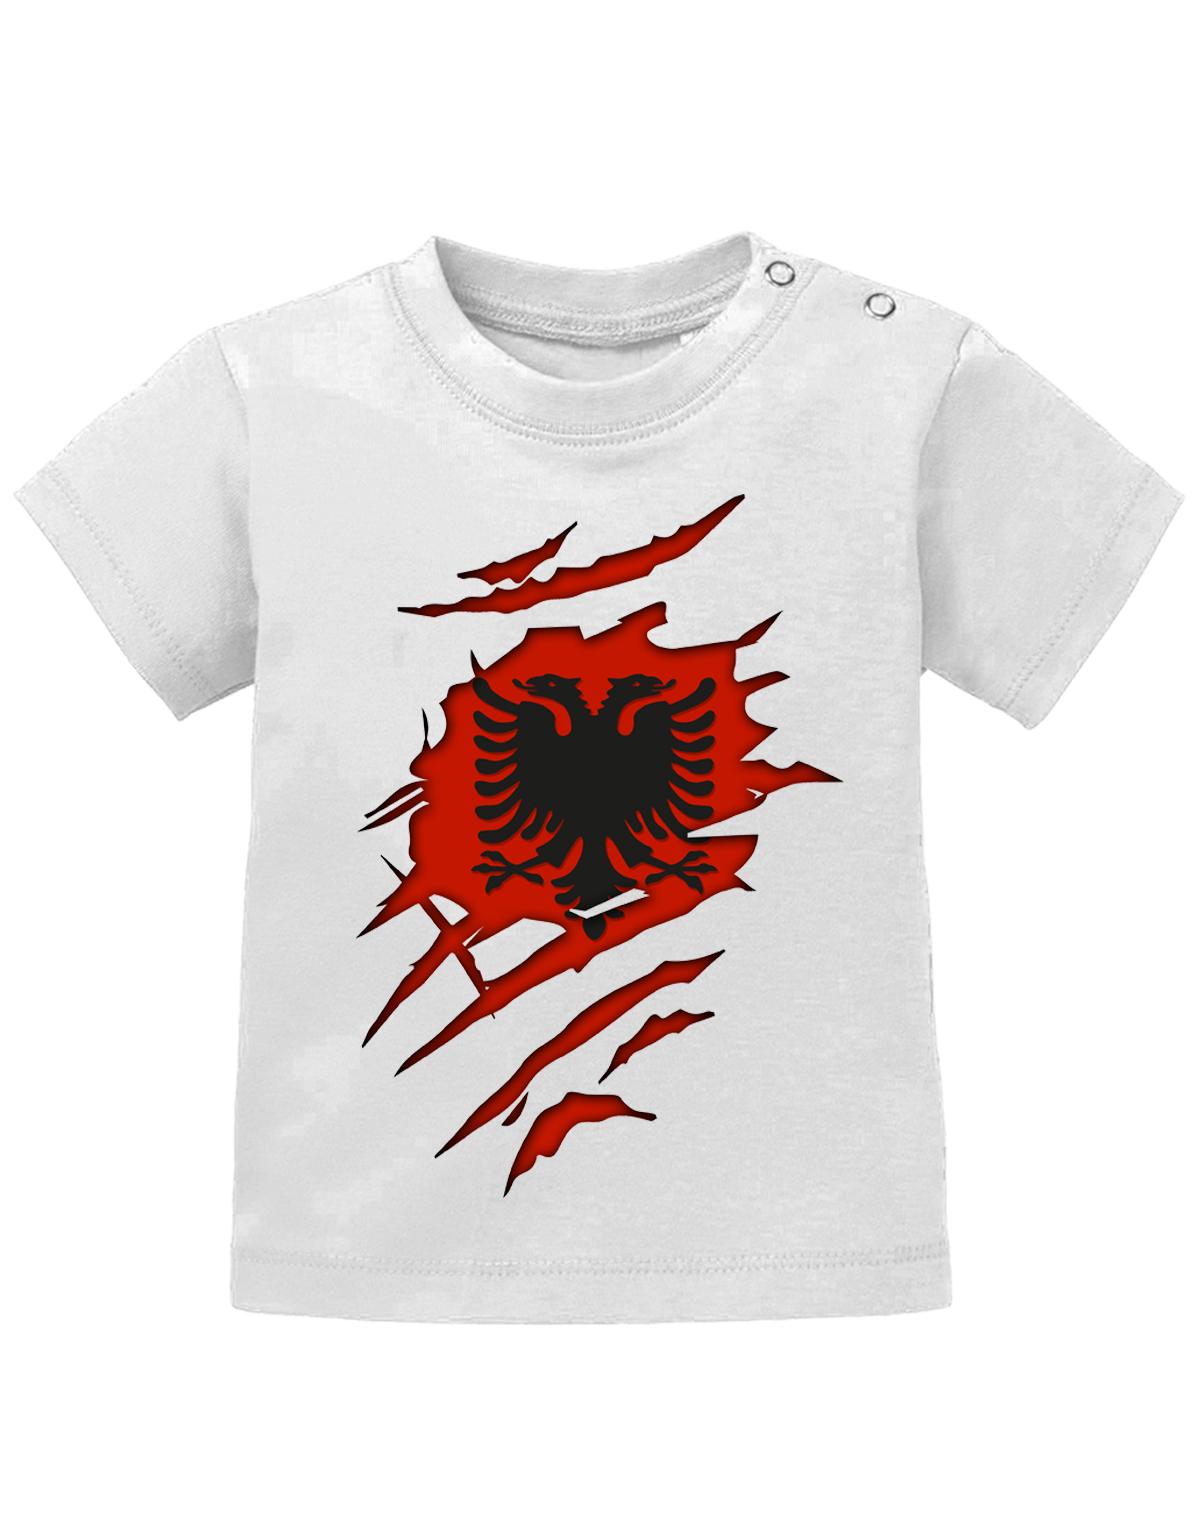 Albanien T Shirt für Junge und Mädchen. Albanischer Adler Design aufgerissen, damit man sieht, dass ein Albaner im Shirt steckt.